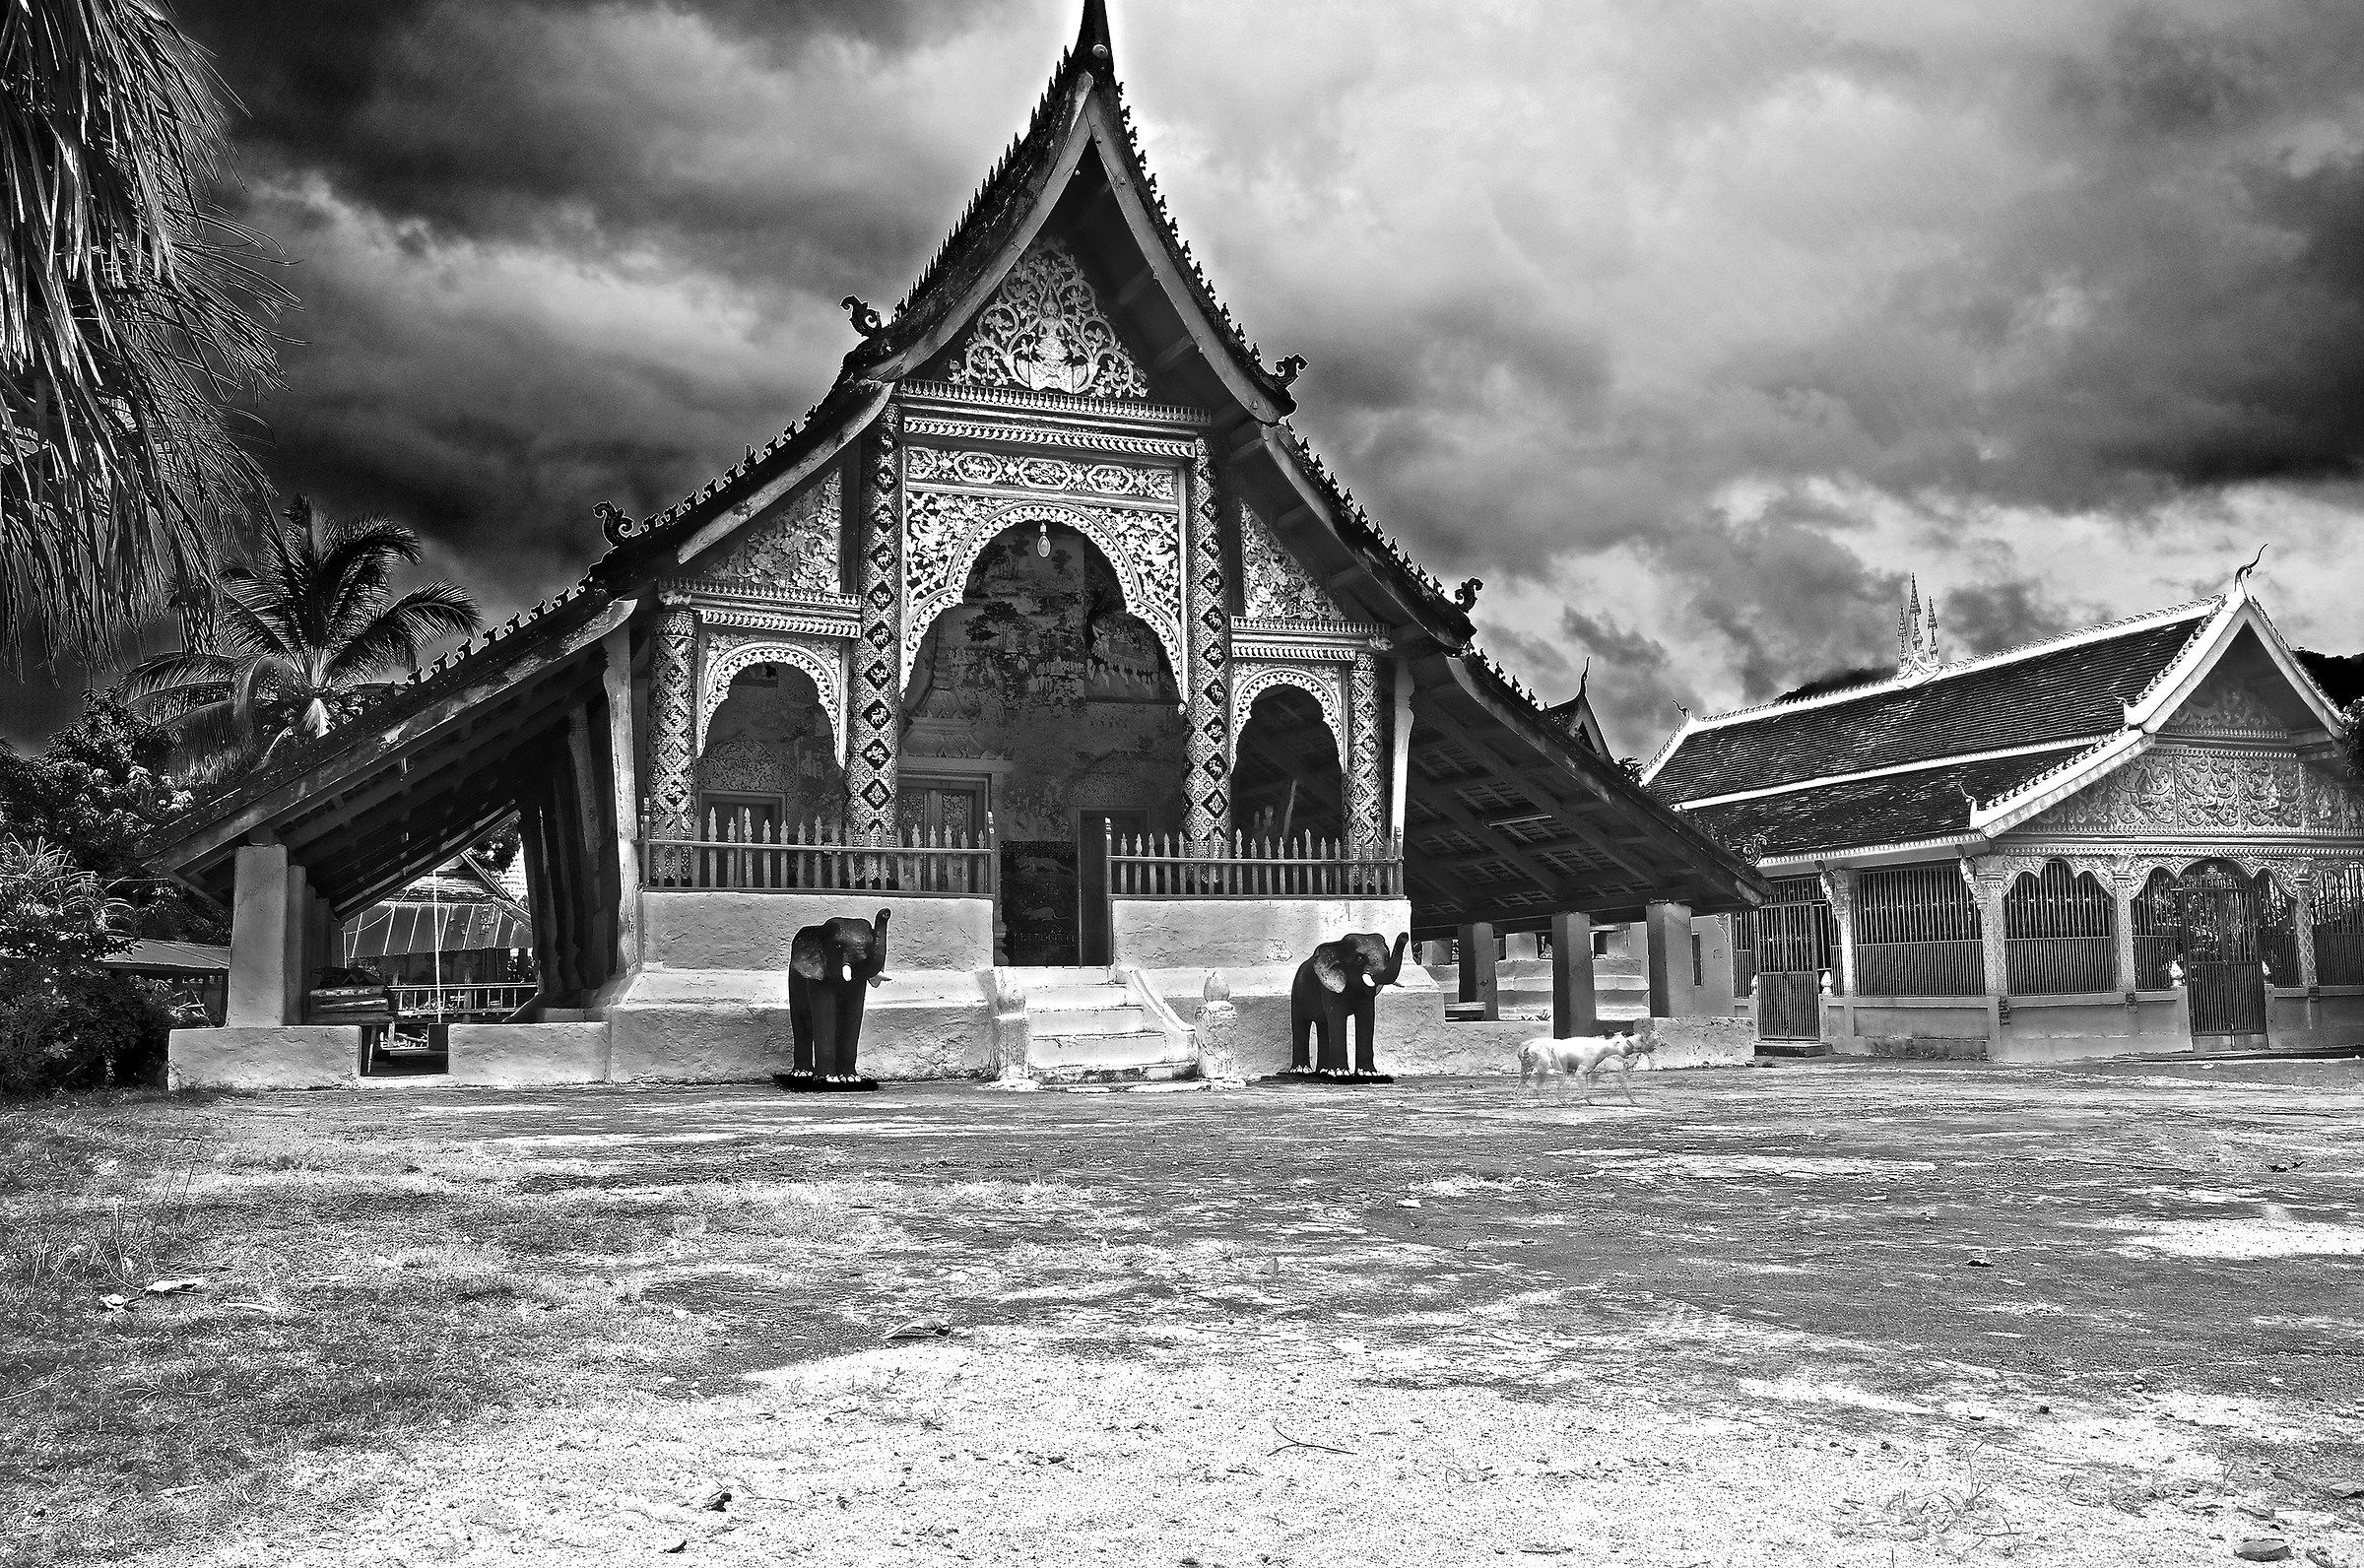 Luang Prabang Temple in Laos...